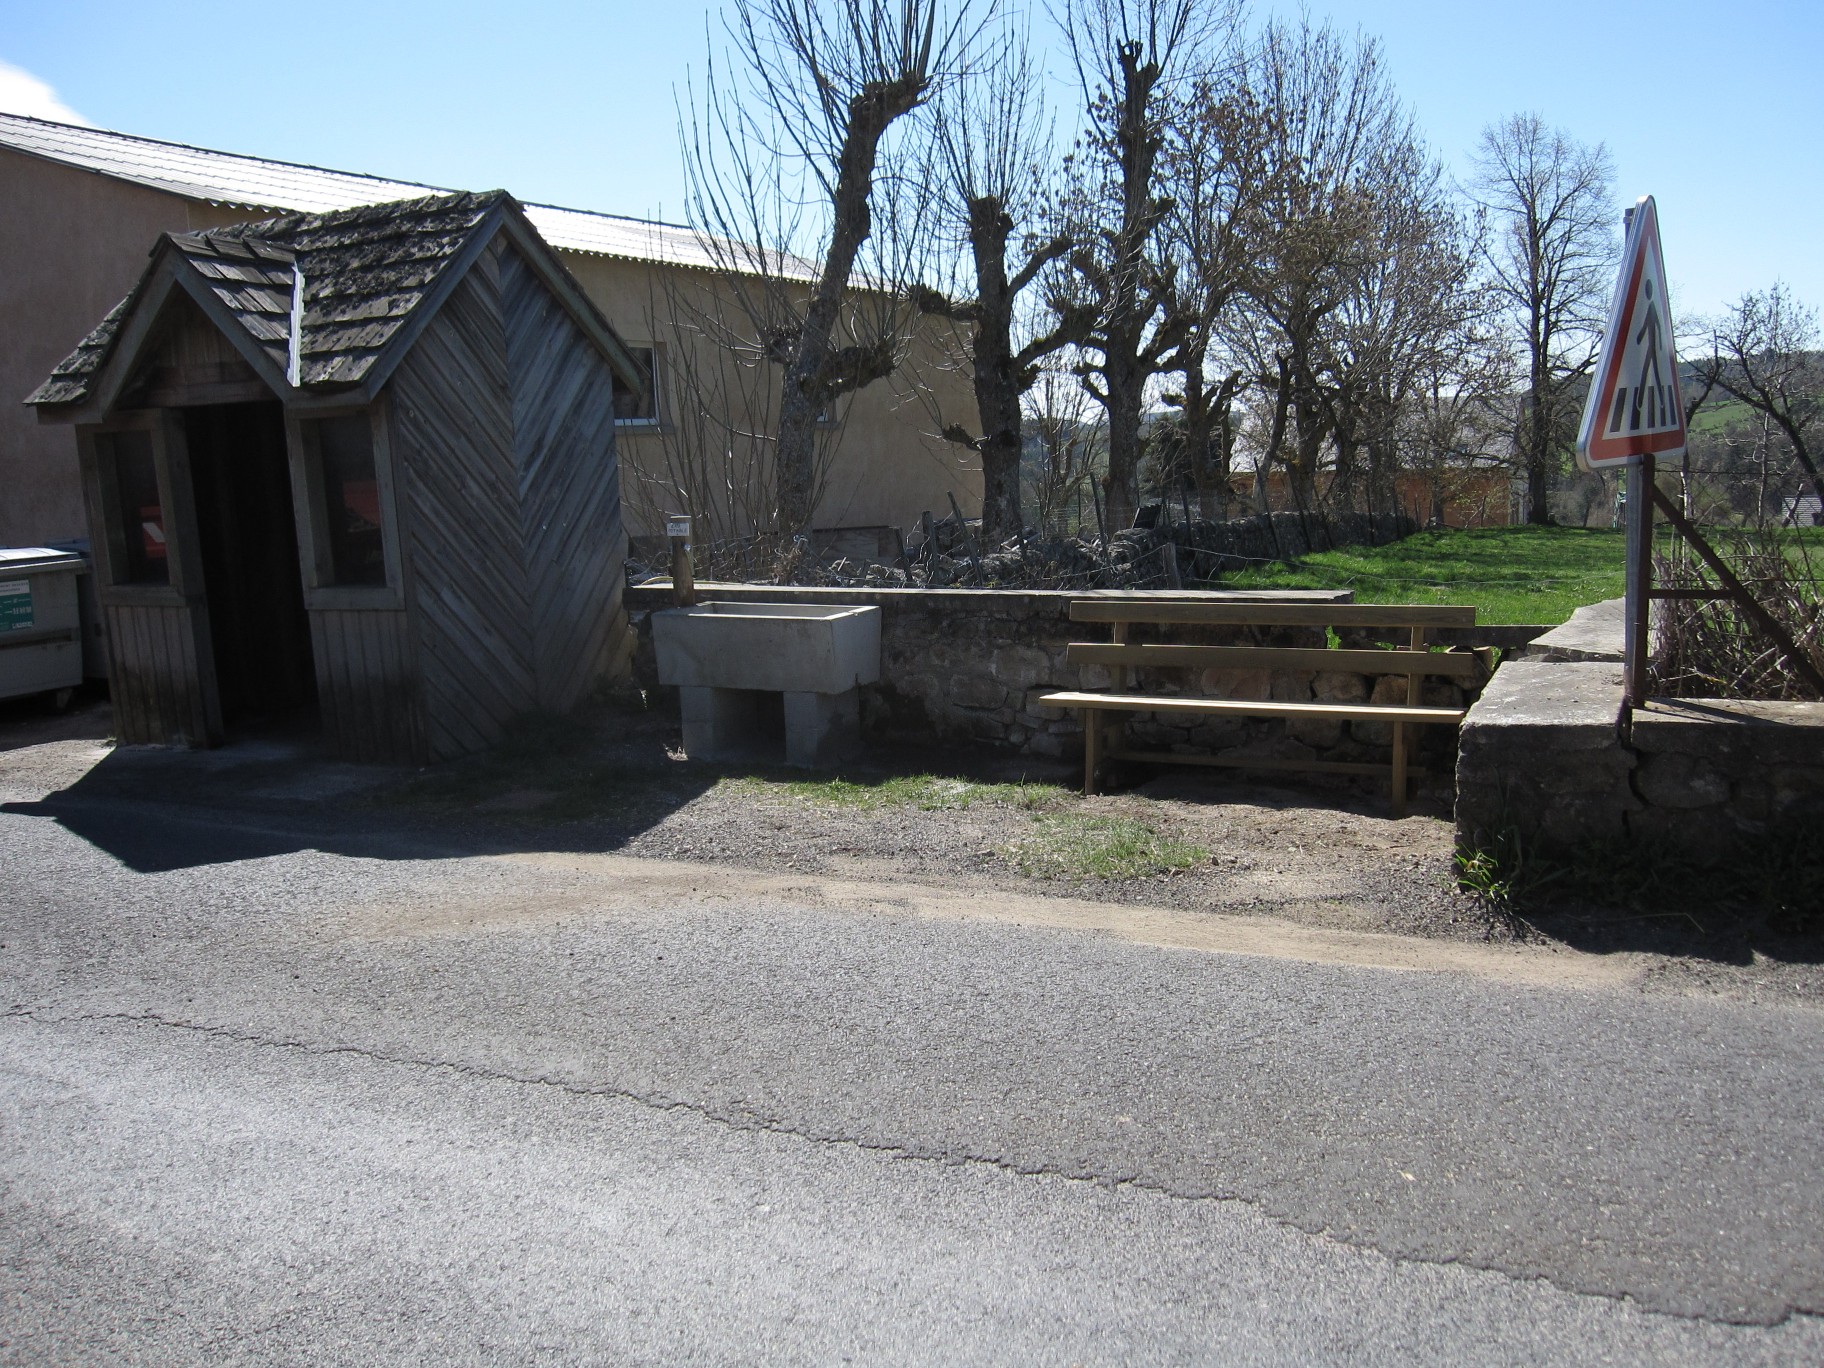 banc et abreuvoir récemment installés près de l'abri scolaire à Lasbros